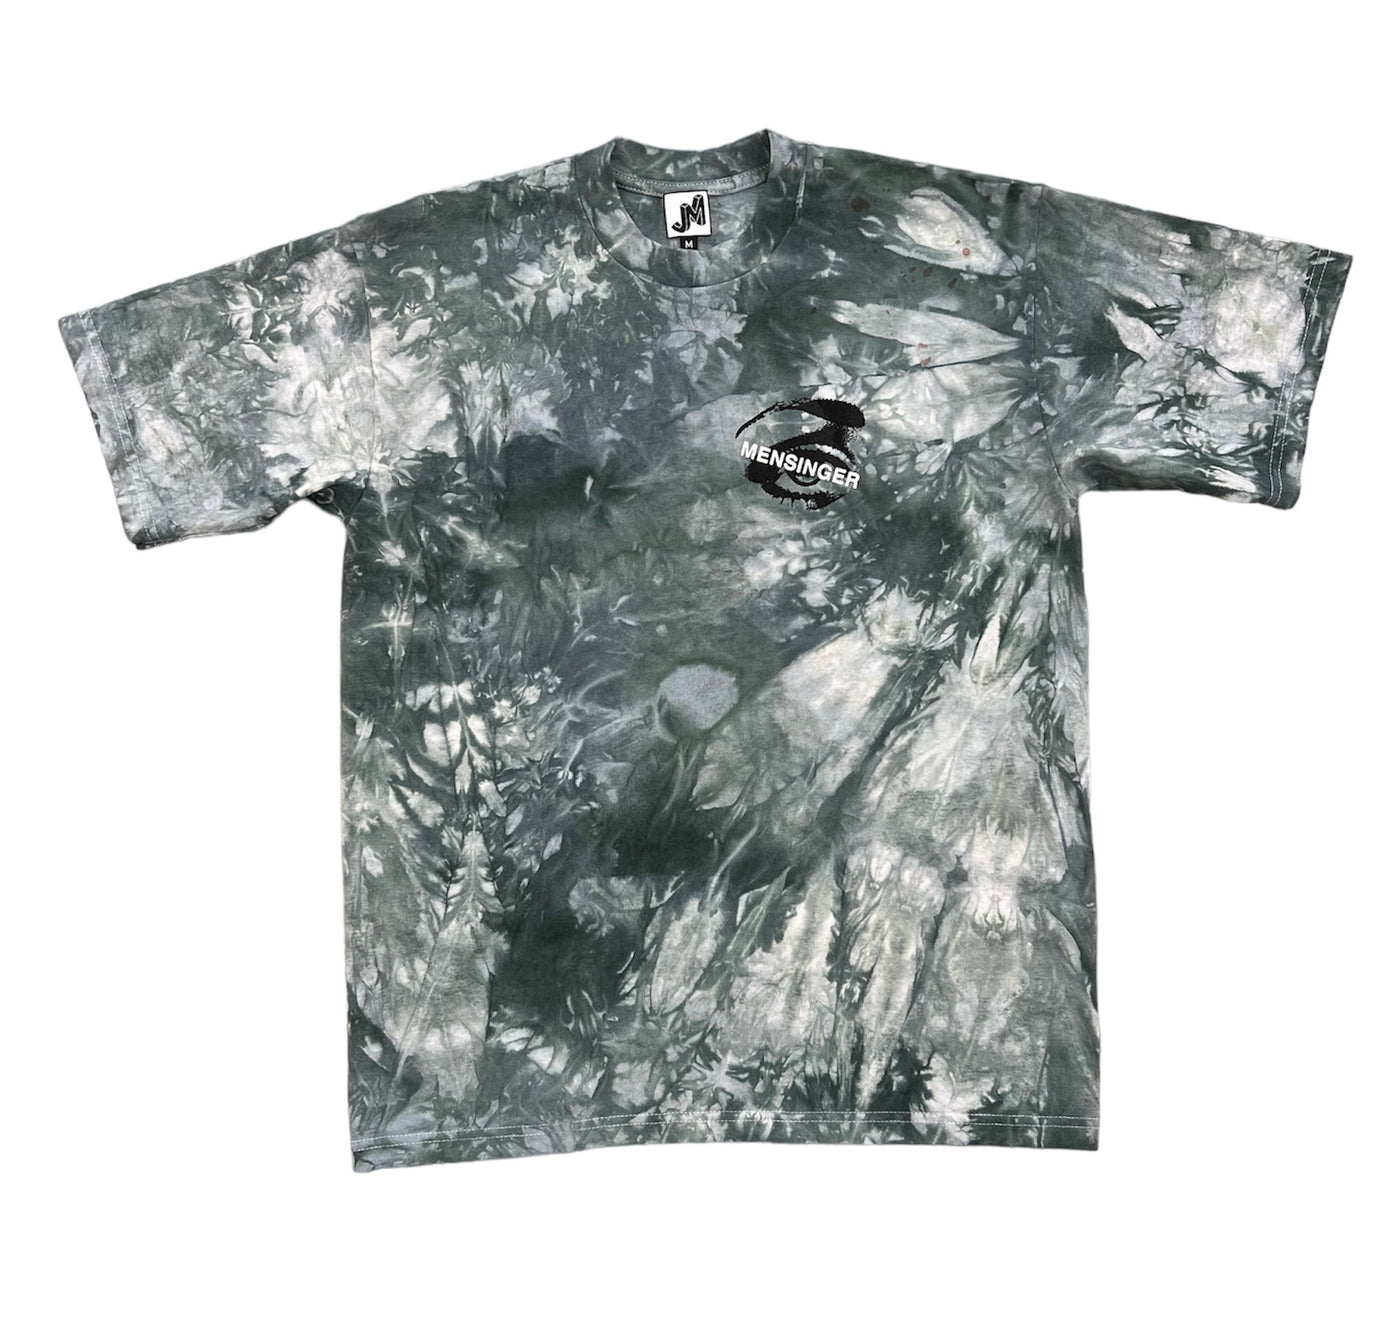 Justin Mensinger Shirt #4 (MEDIUM)